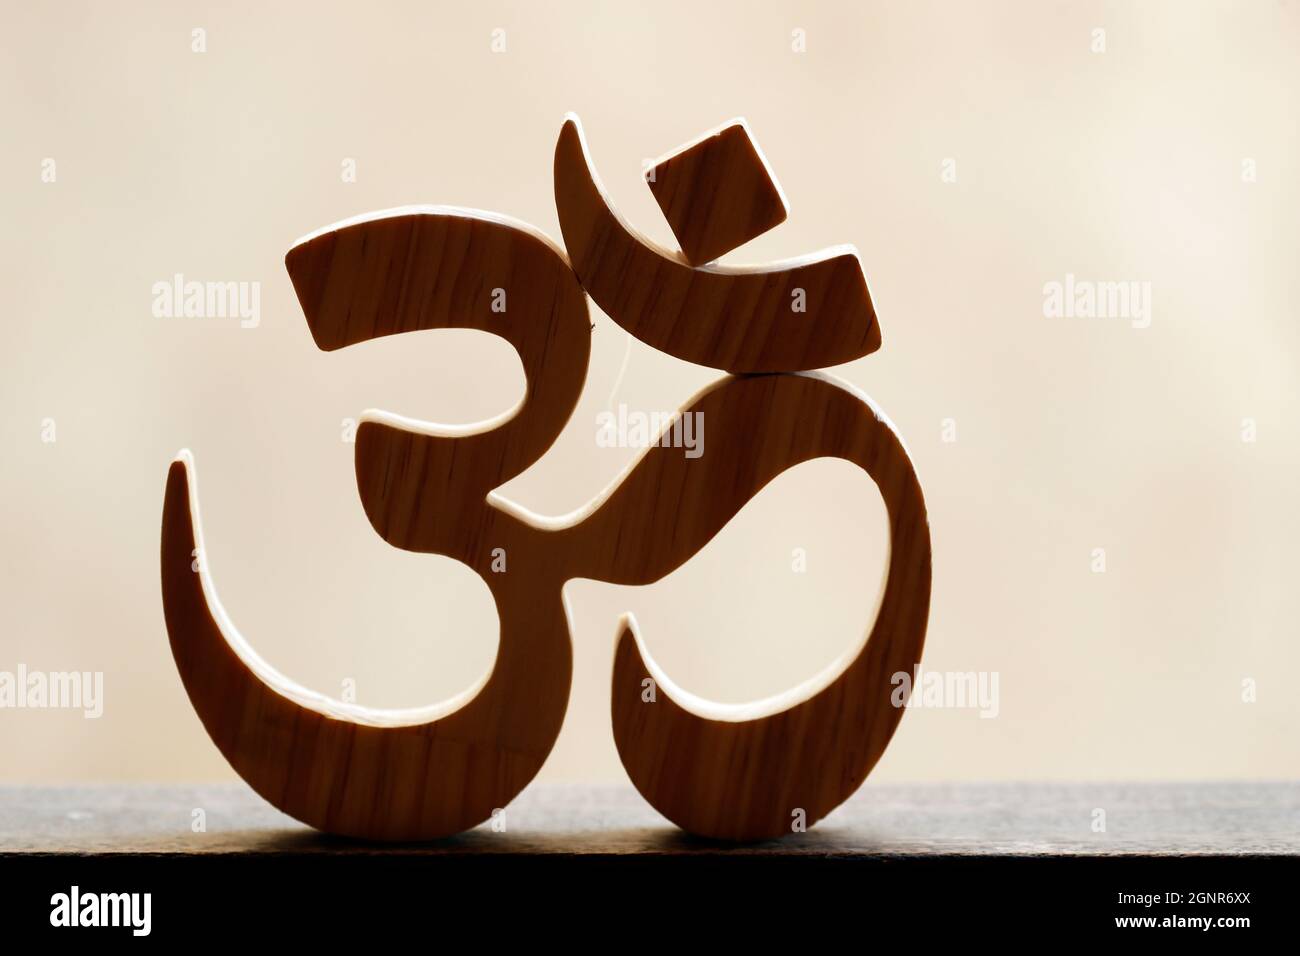 Das Om oder Aum Symbol des Hinduismus und Buddhismus. Asiatisches religiöses und Meditationssymbol. Stockfoto